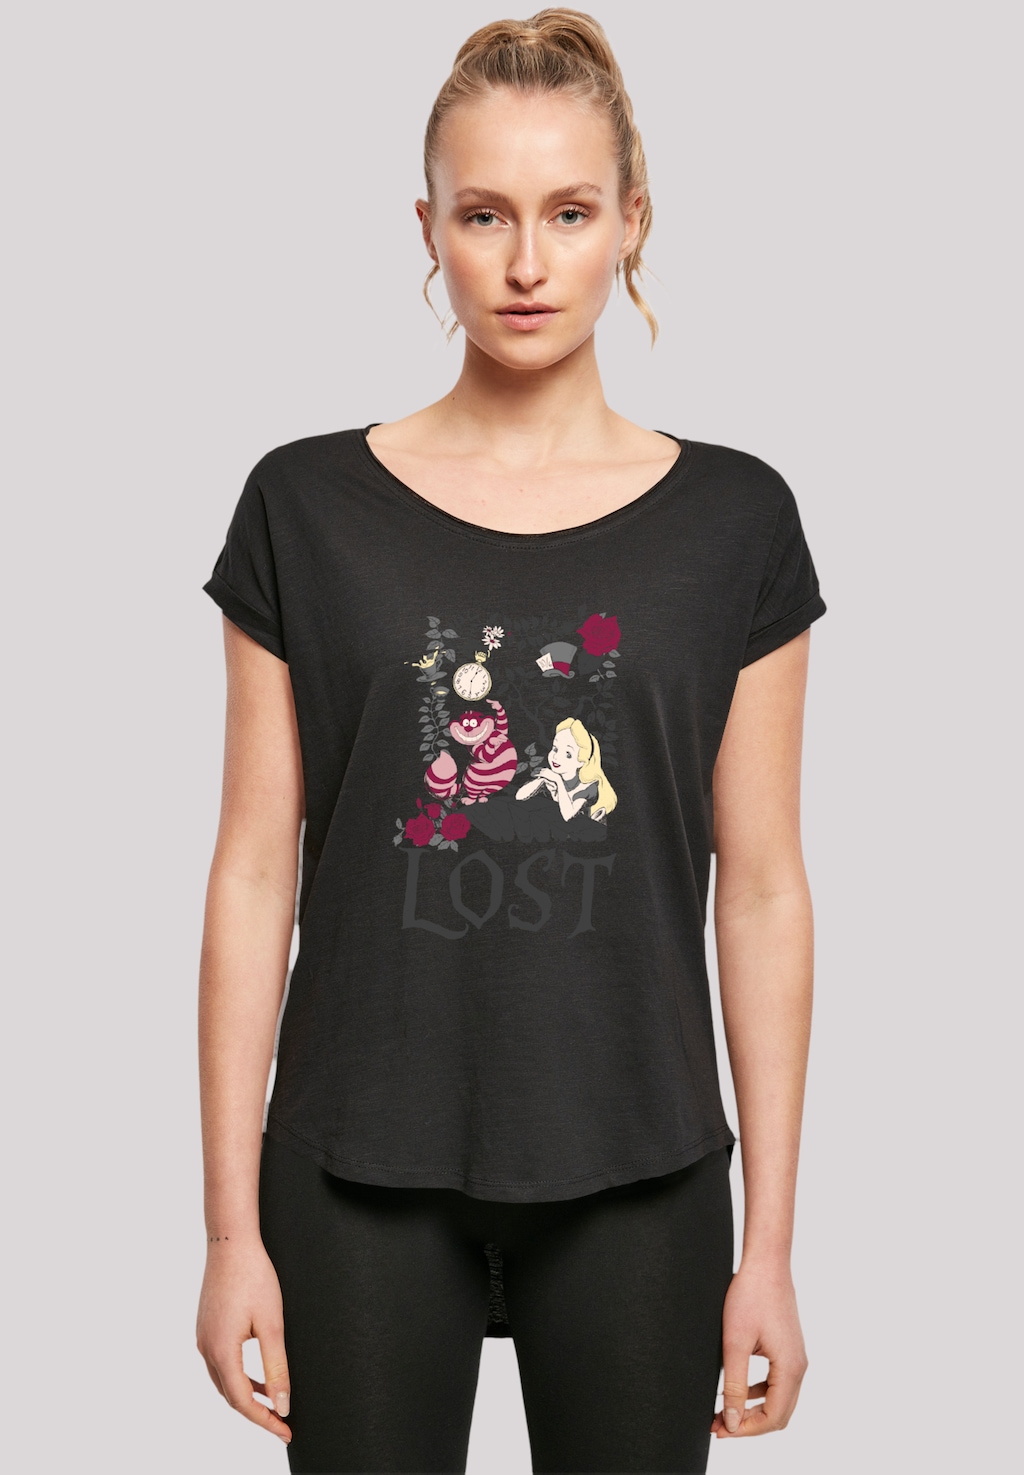 F4NT4STIC T-Shirt "Disney Alice im Wunderland Lost", Premium Qualität günstig online kaufen